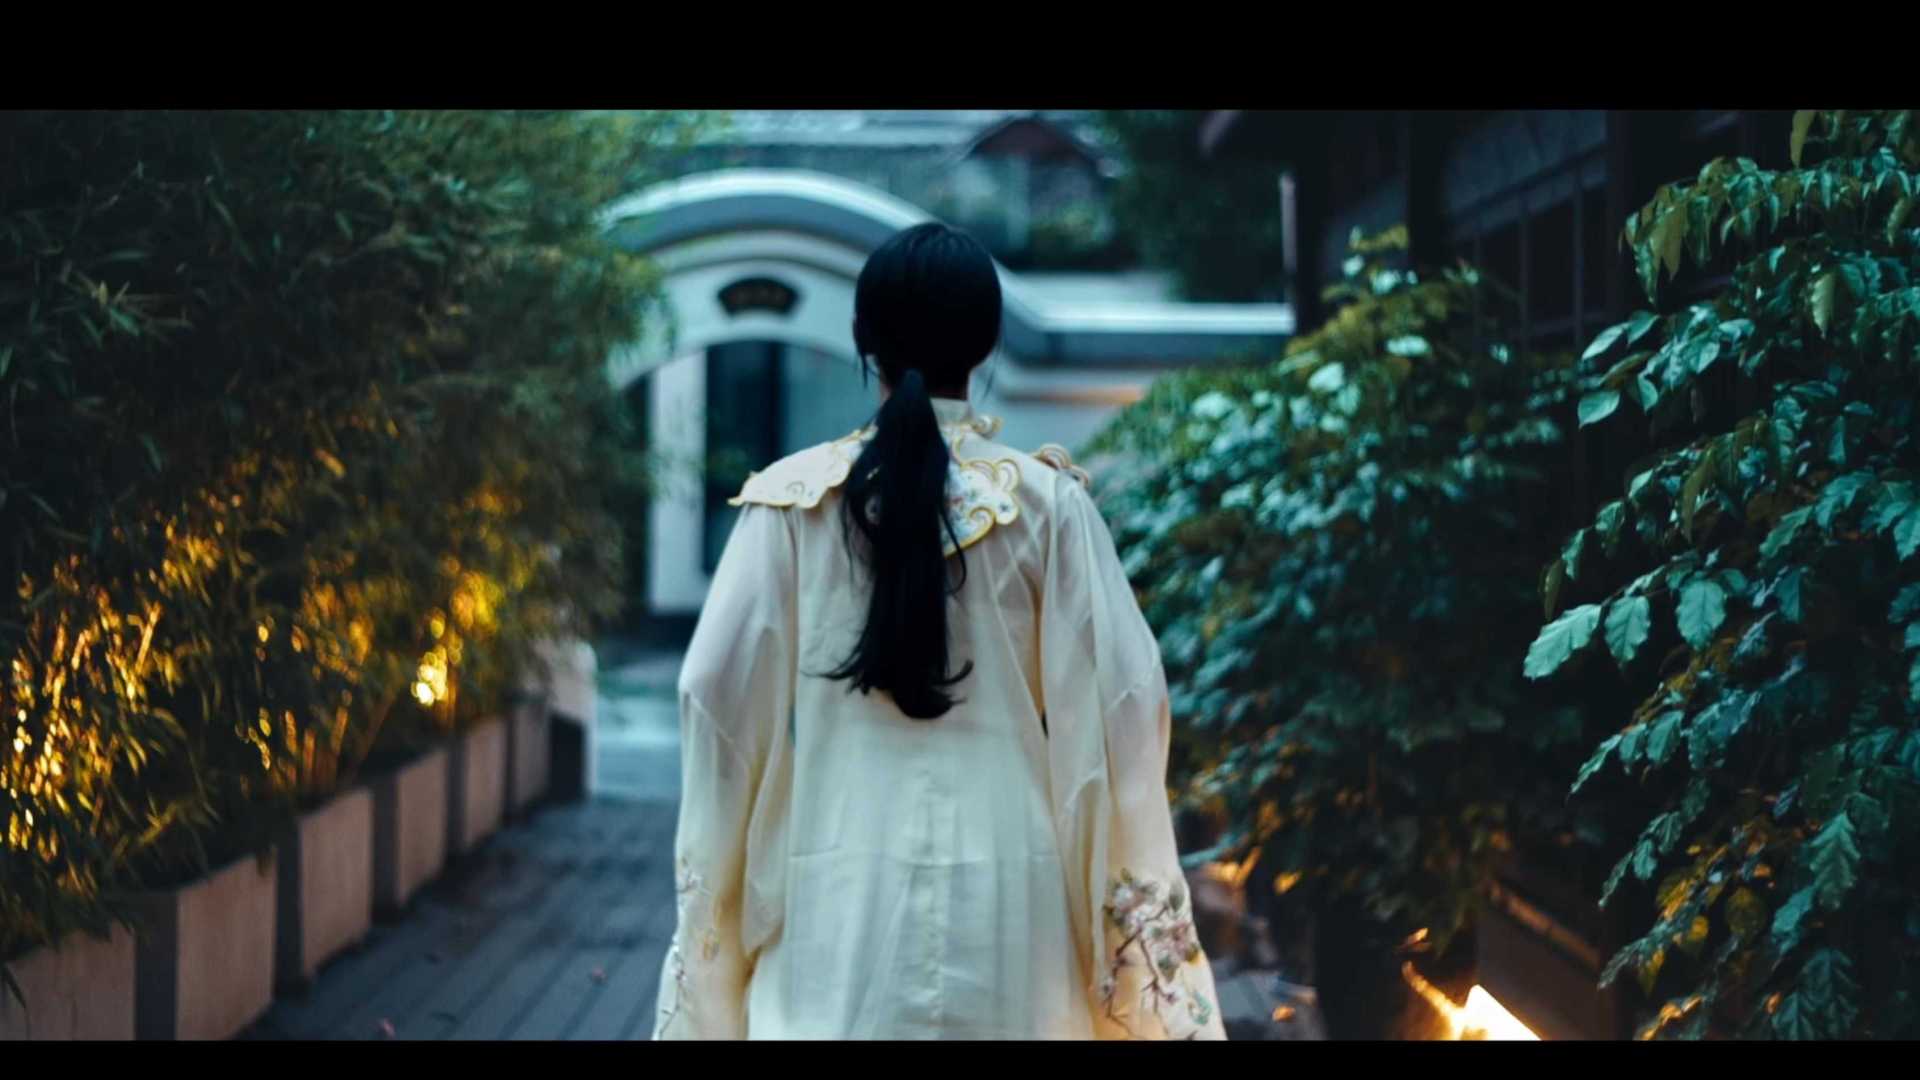 成都周边民宿探店广告短视频-青羊宫三生邸院